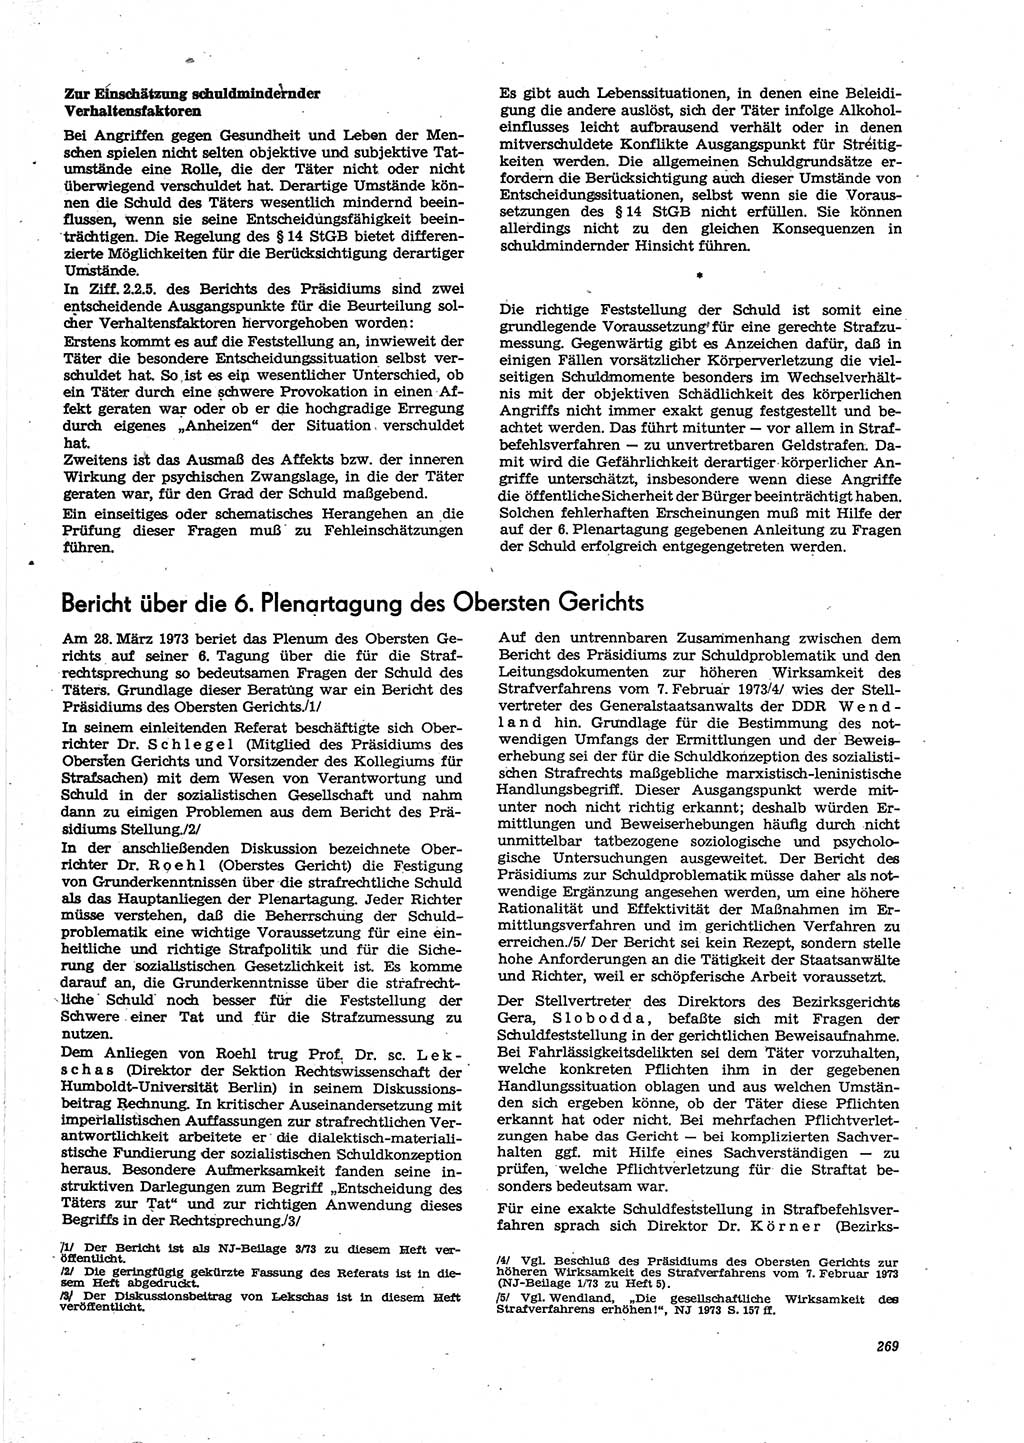 Neue Justiz (NJ), Zeitschrift für Recht und Rechtswissenschaft [Deutsche Demokratische Republik (DDR)], 27. Jahrgang 1973, Seite 269 (NJ DDR 1973, S. 269)